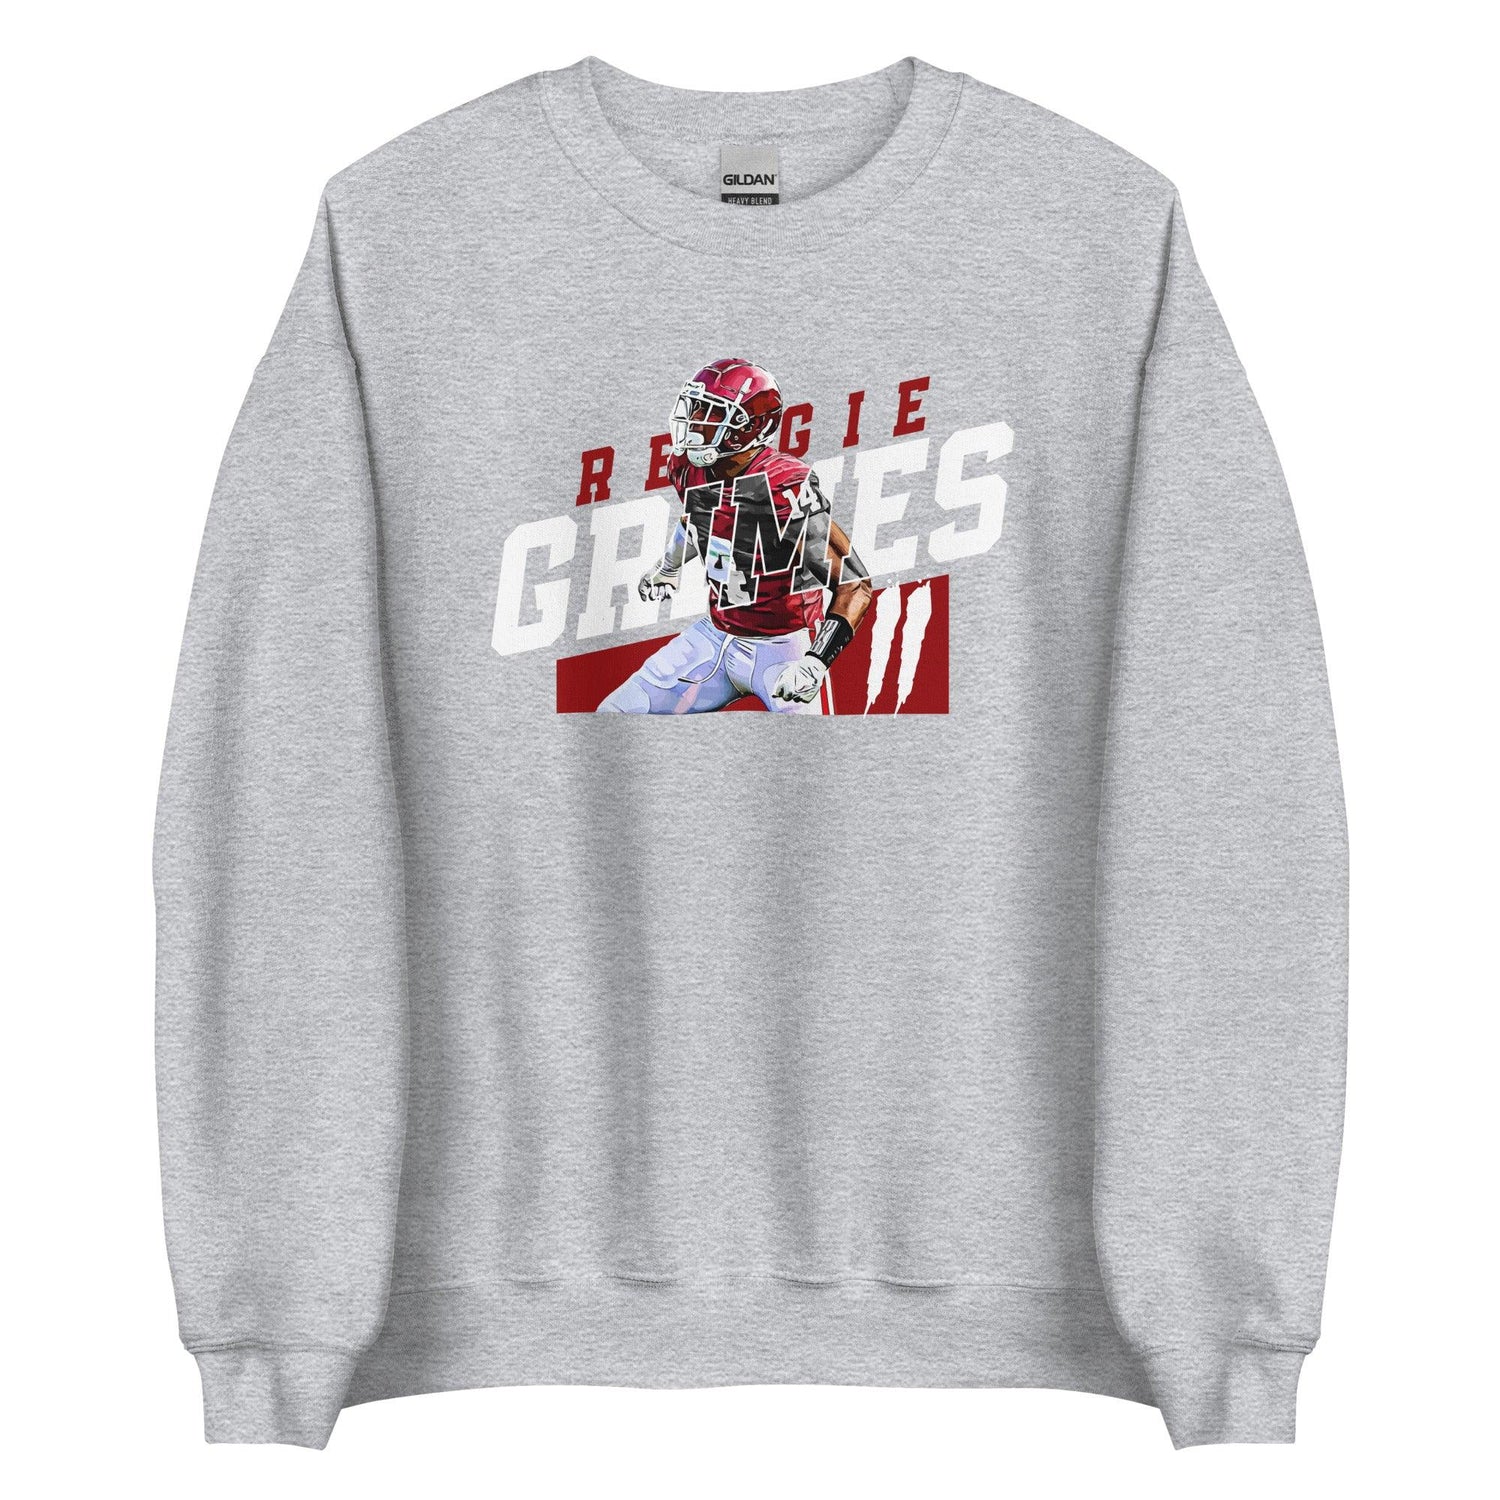 Reggie Grimes II "Gametime" Sweatshirt - Fan Arch